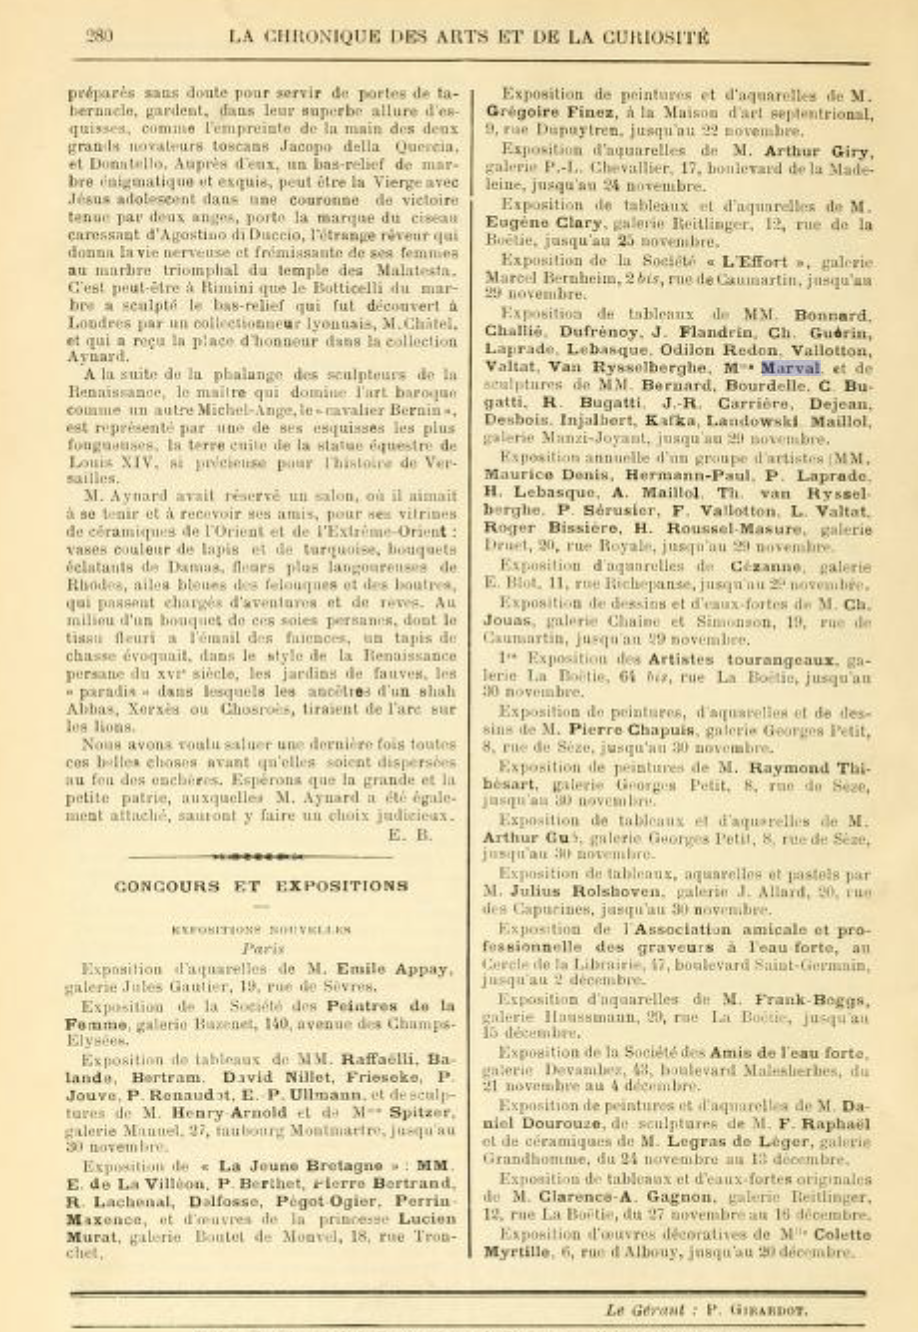 Chronique des Arts et de la Curiosité, Gazette des Beaux-Arts, novembre 1913